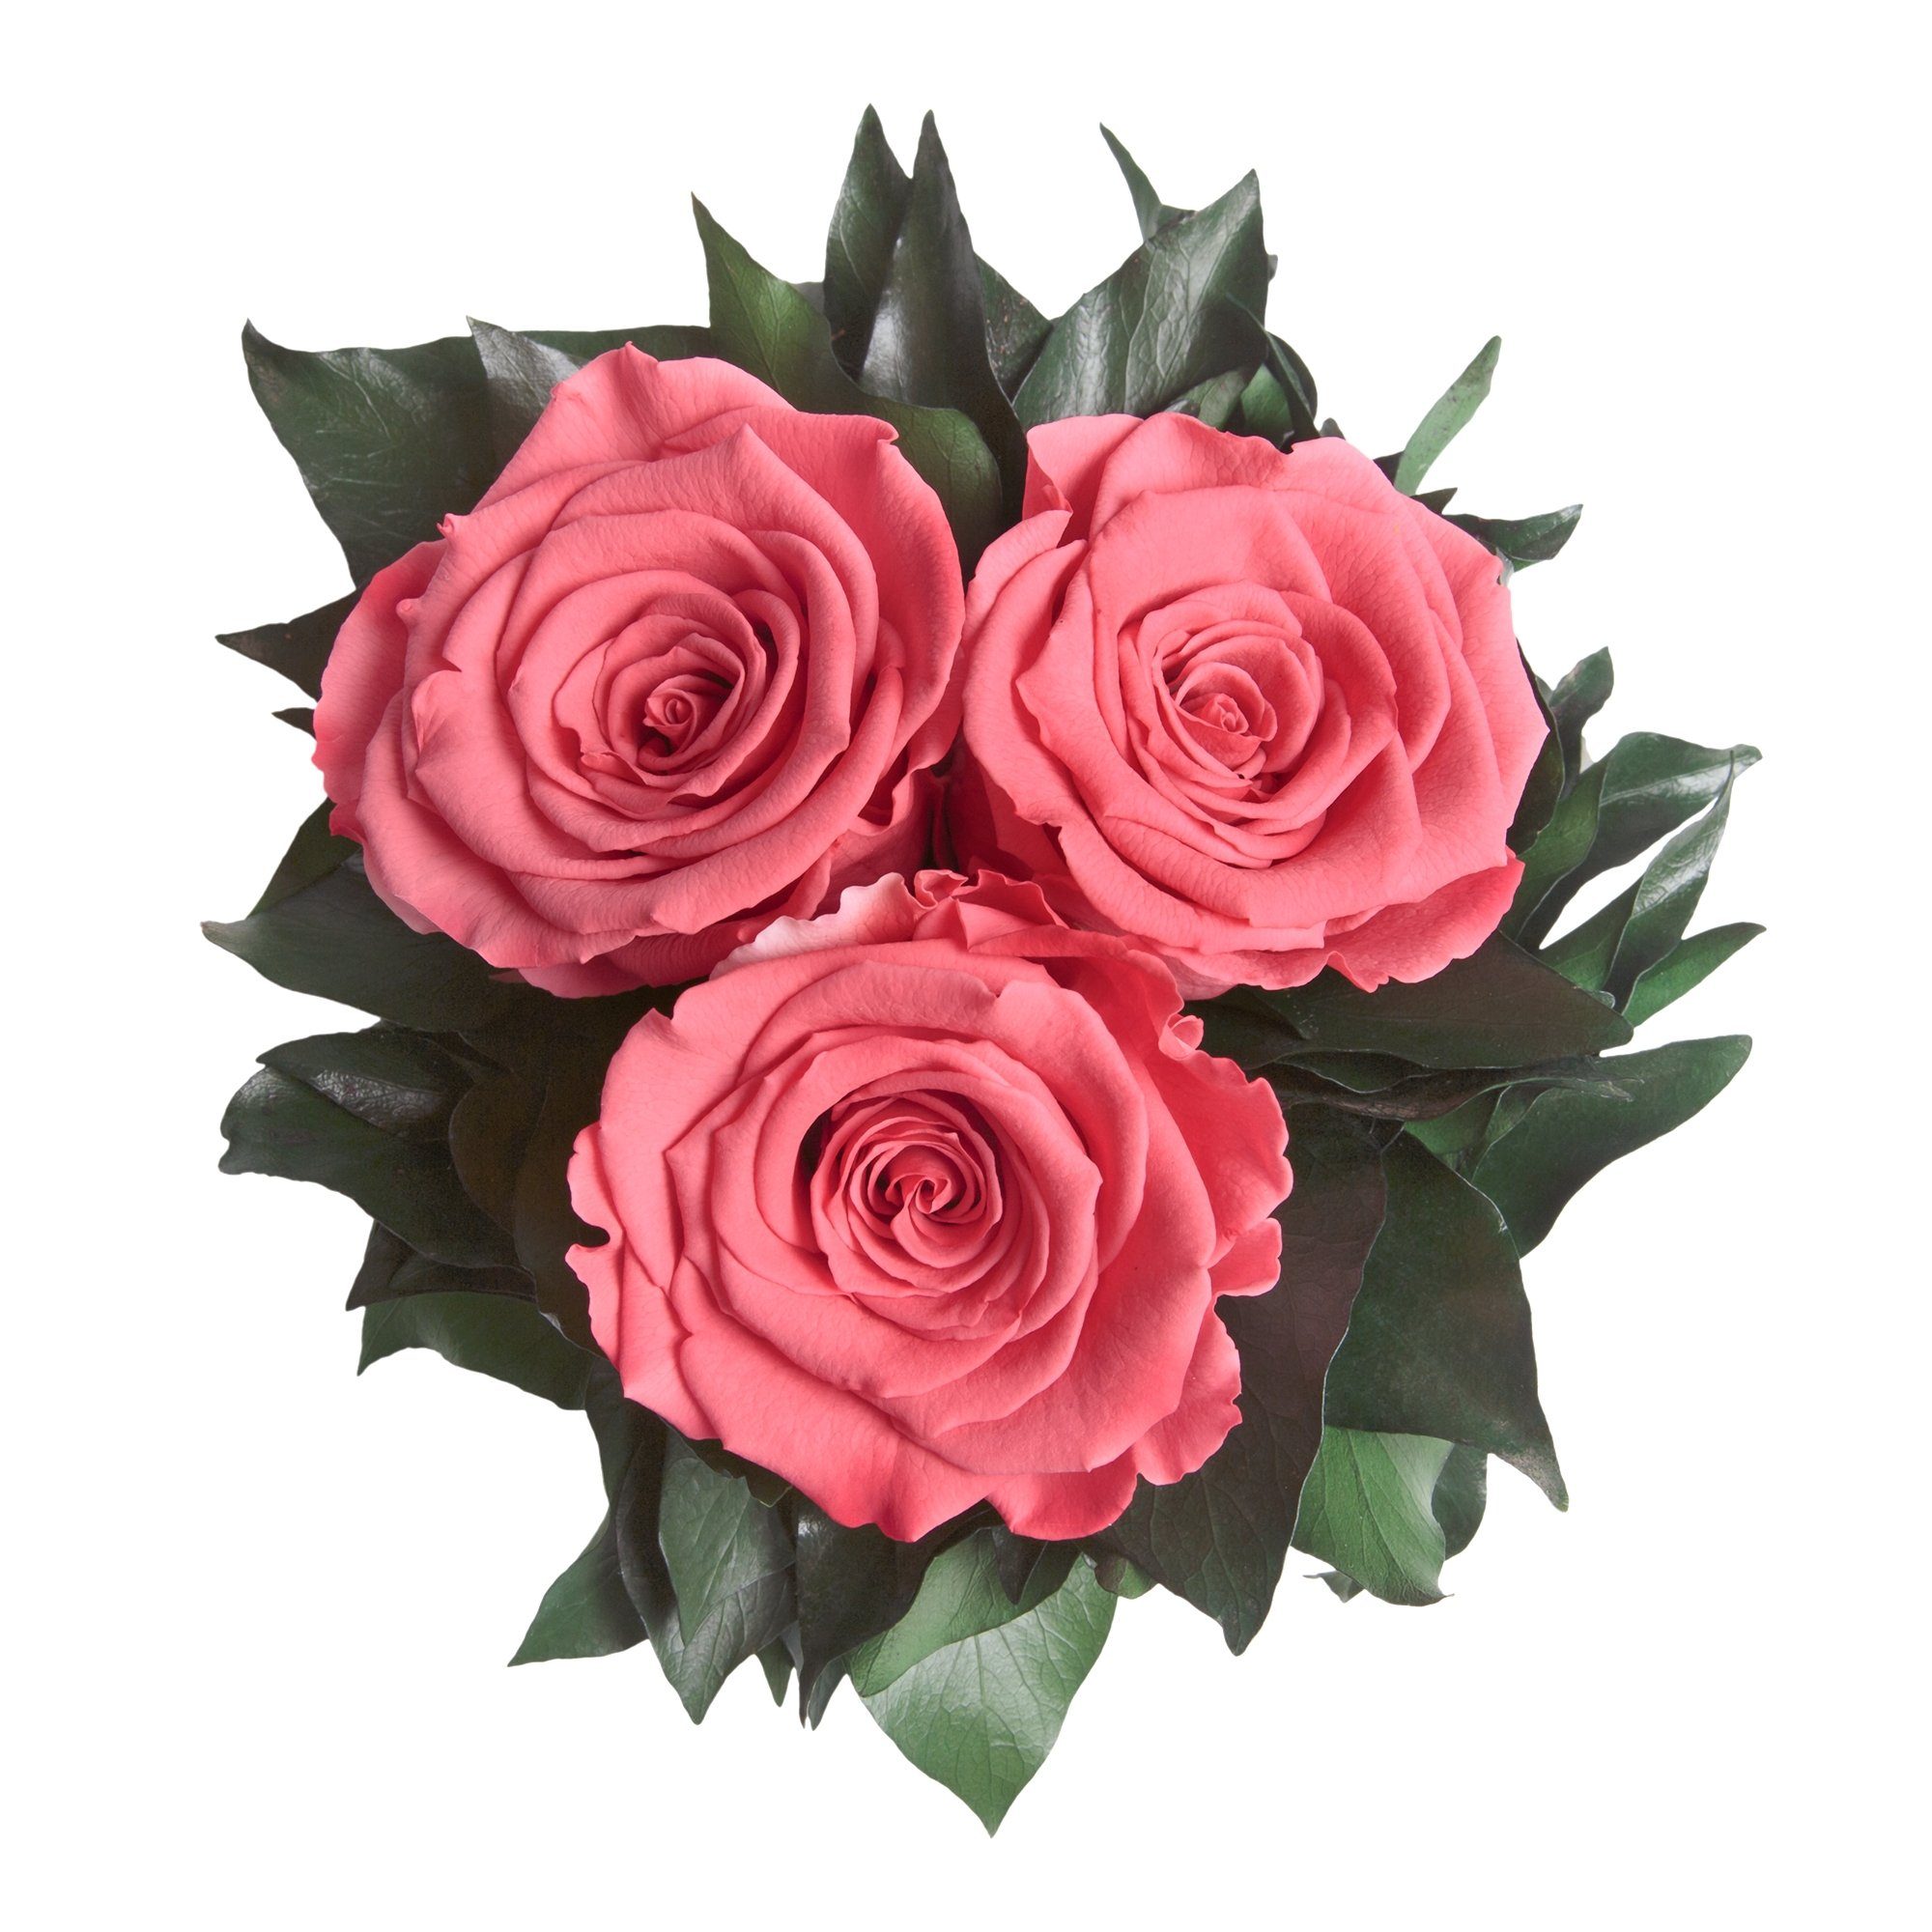 Rose silberfarbene 3 Infinity Rosen bis Rose, Wohnzimmer zu Deko Korall ROSEMARIE Vase Kunstorchidee 15 Blumenstrauß cm, Höhe Jahre SCHULZ Heidelberg, 3 haltbar